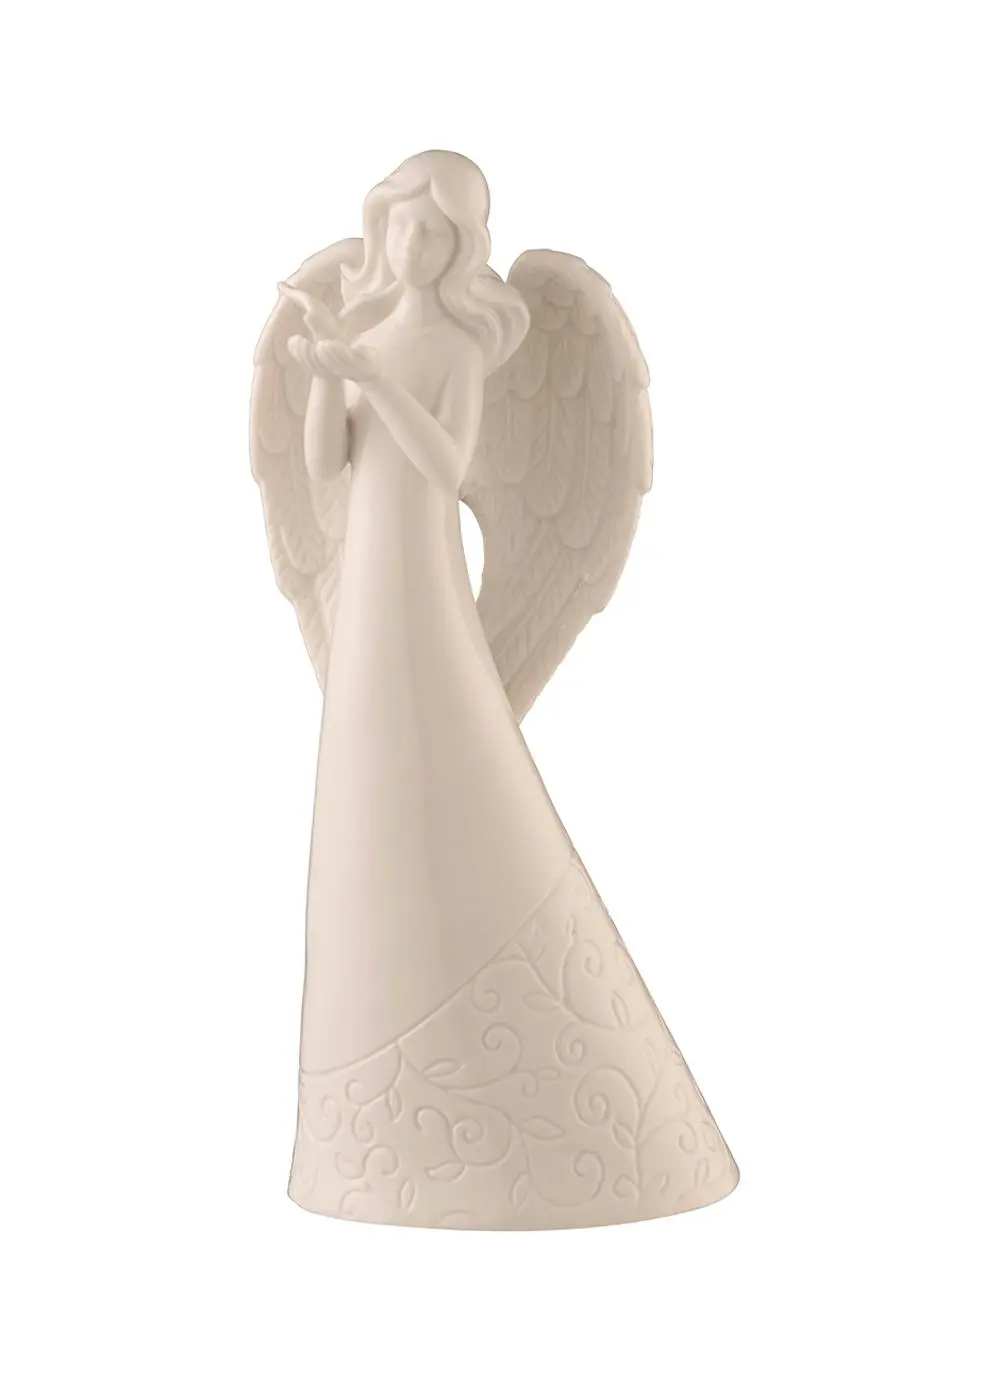 Belleek Angel with Dove Figurine | Blarney